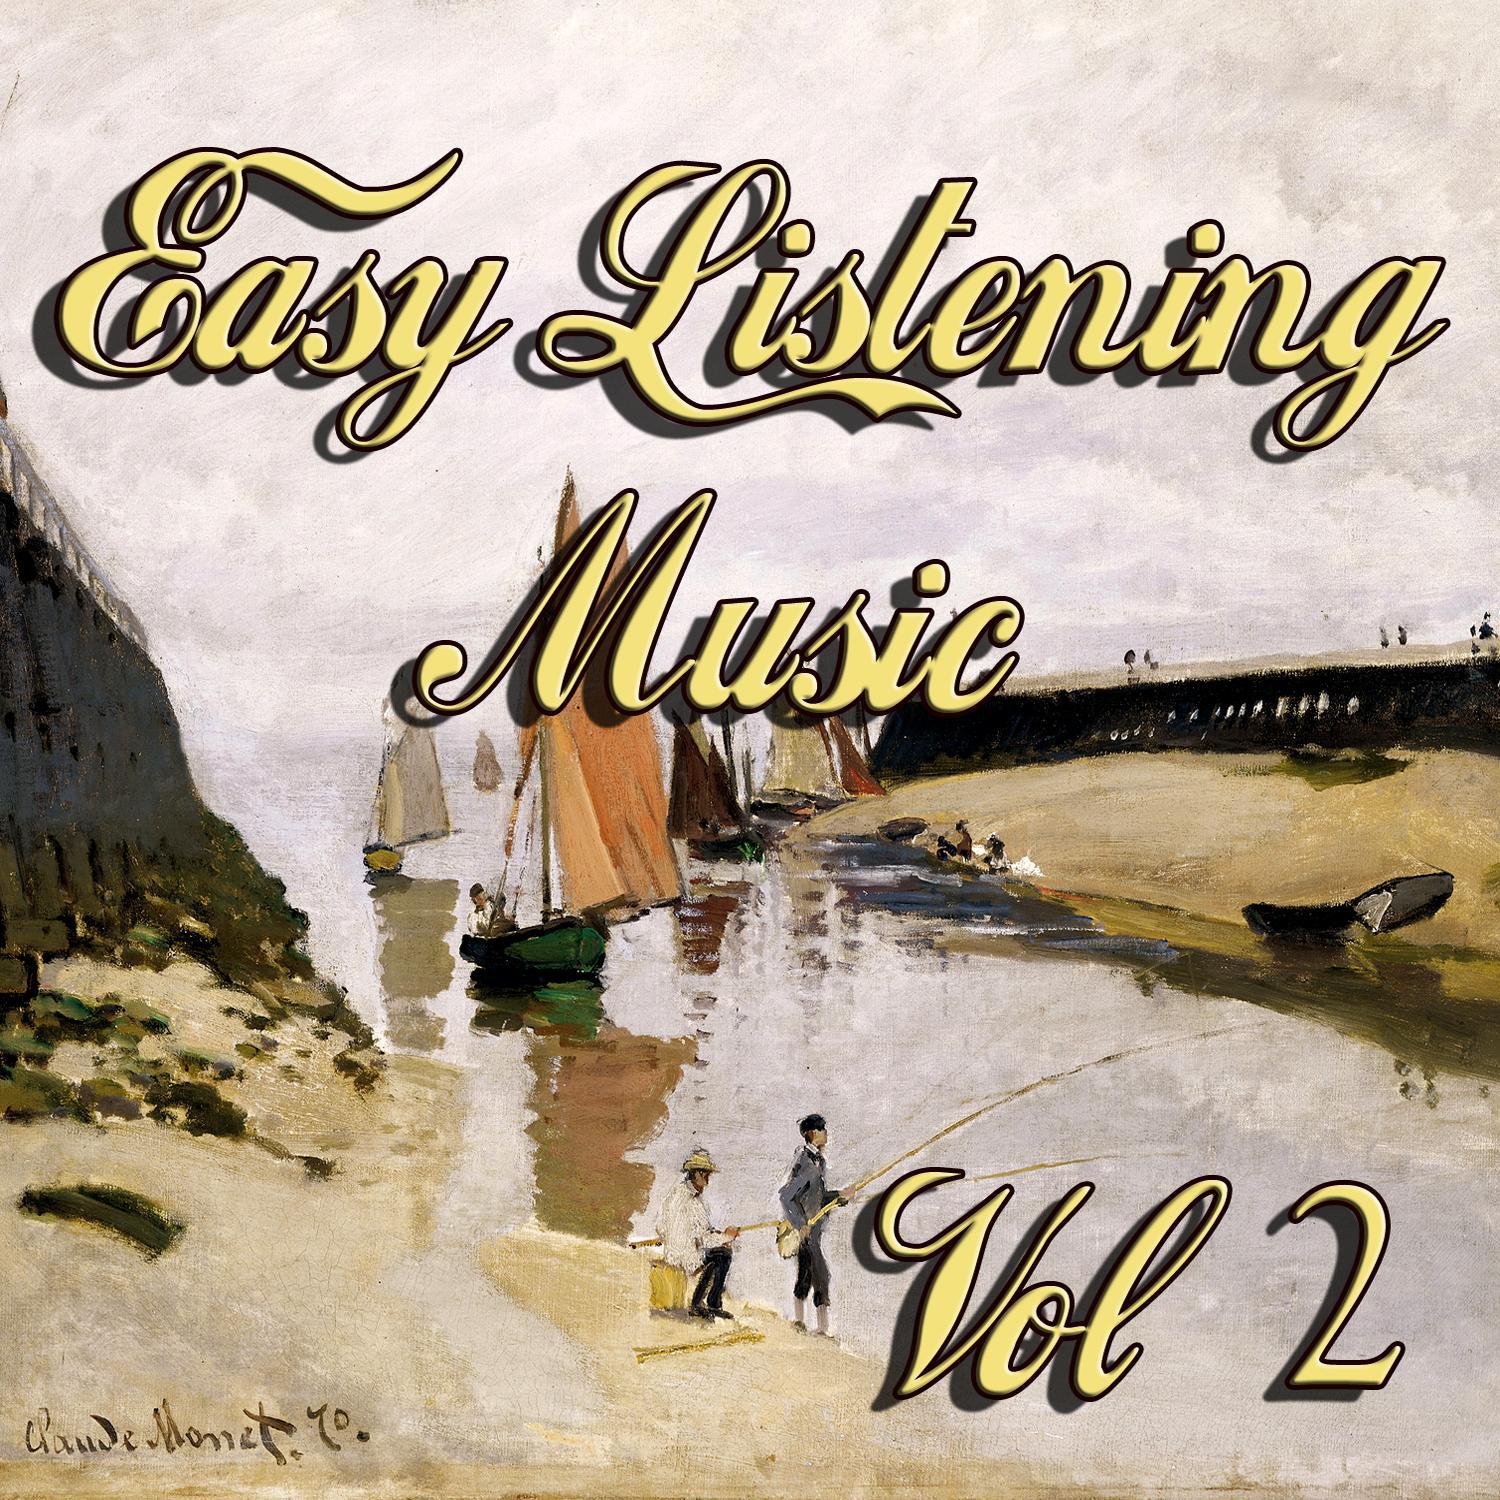 Easy Listening Music Vol 2